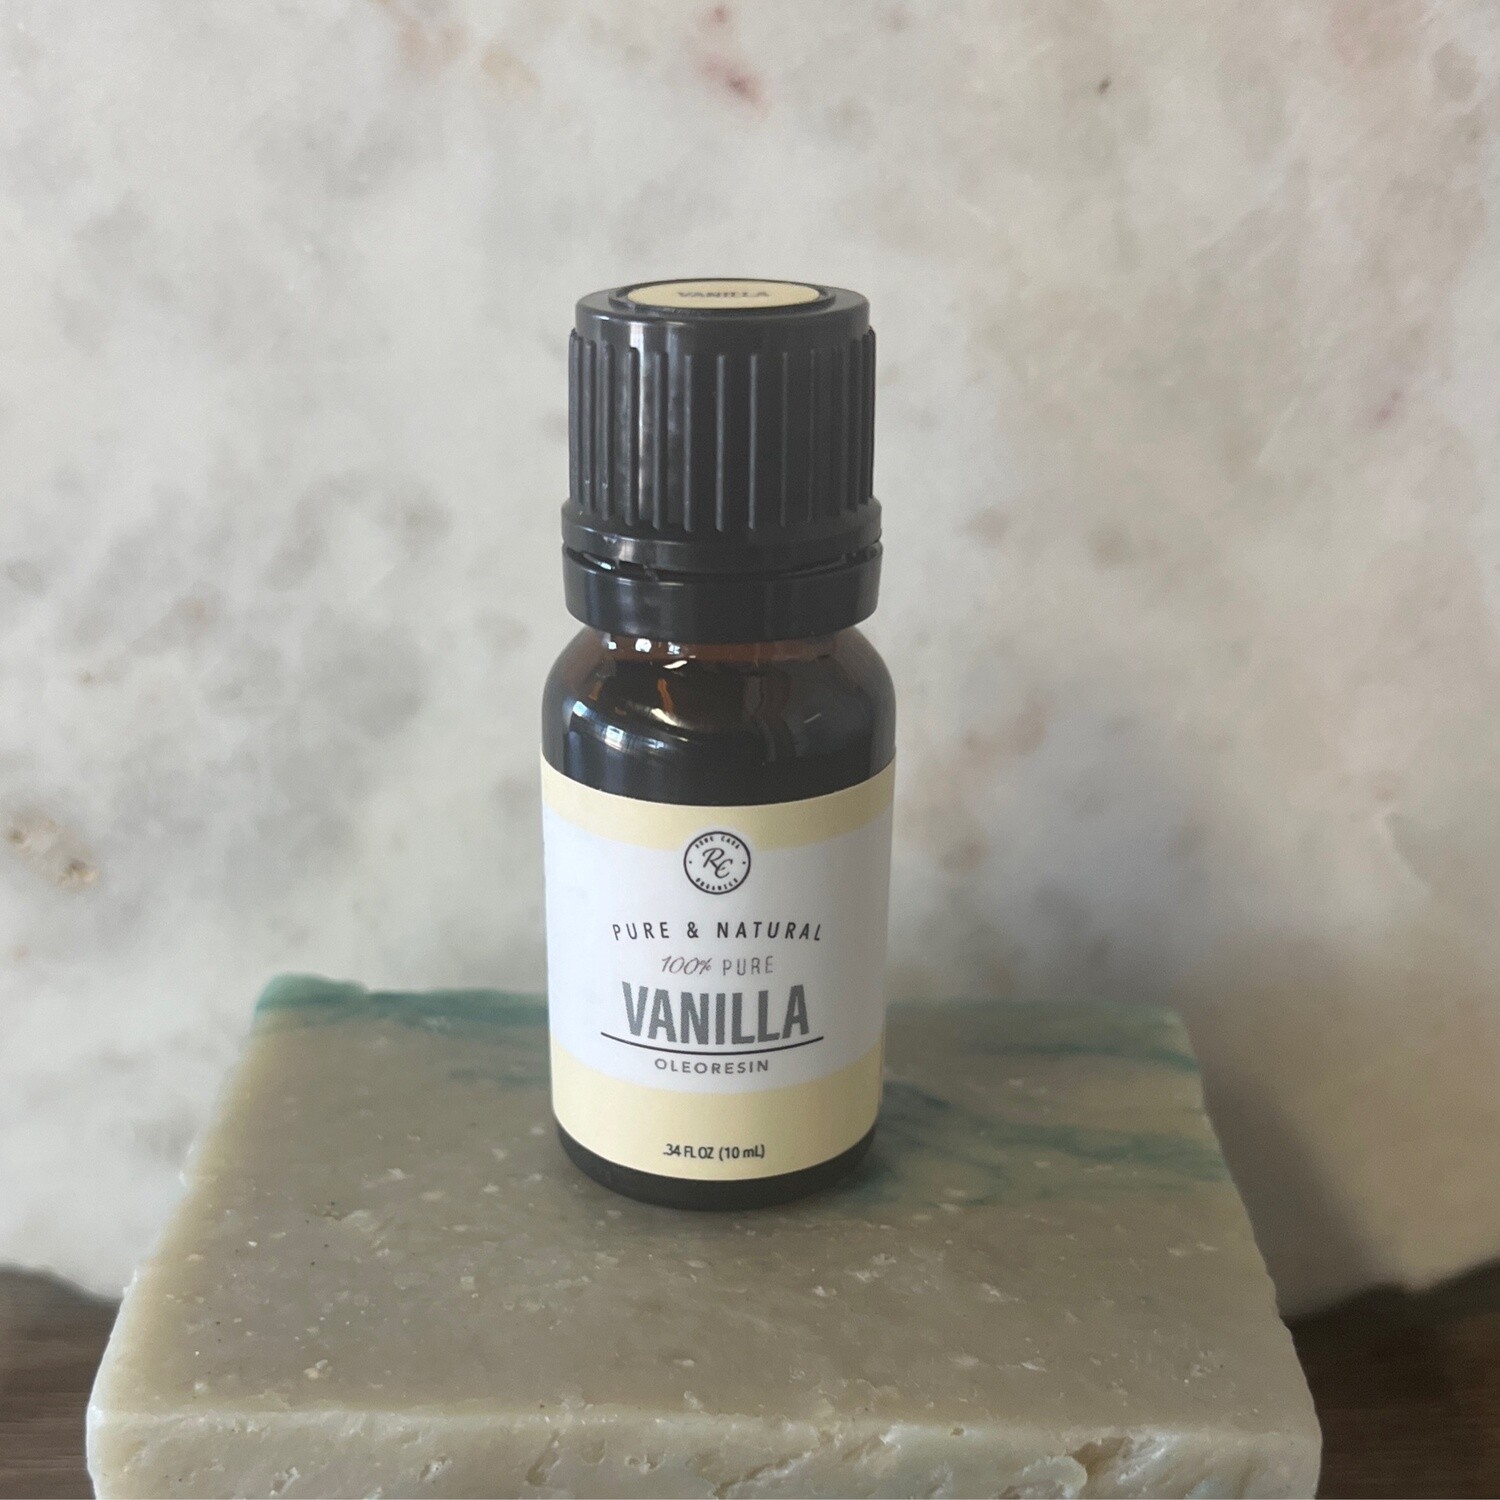 Essential Oil - Vanilla